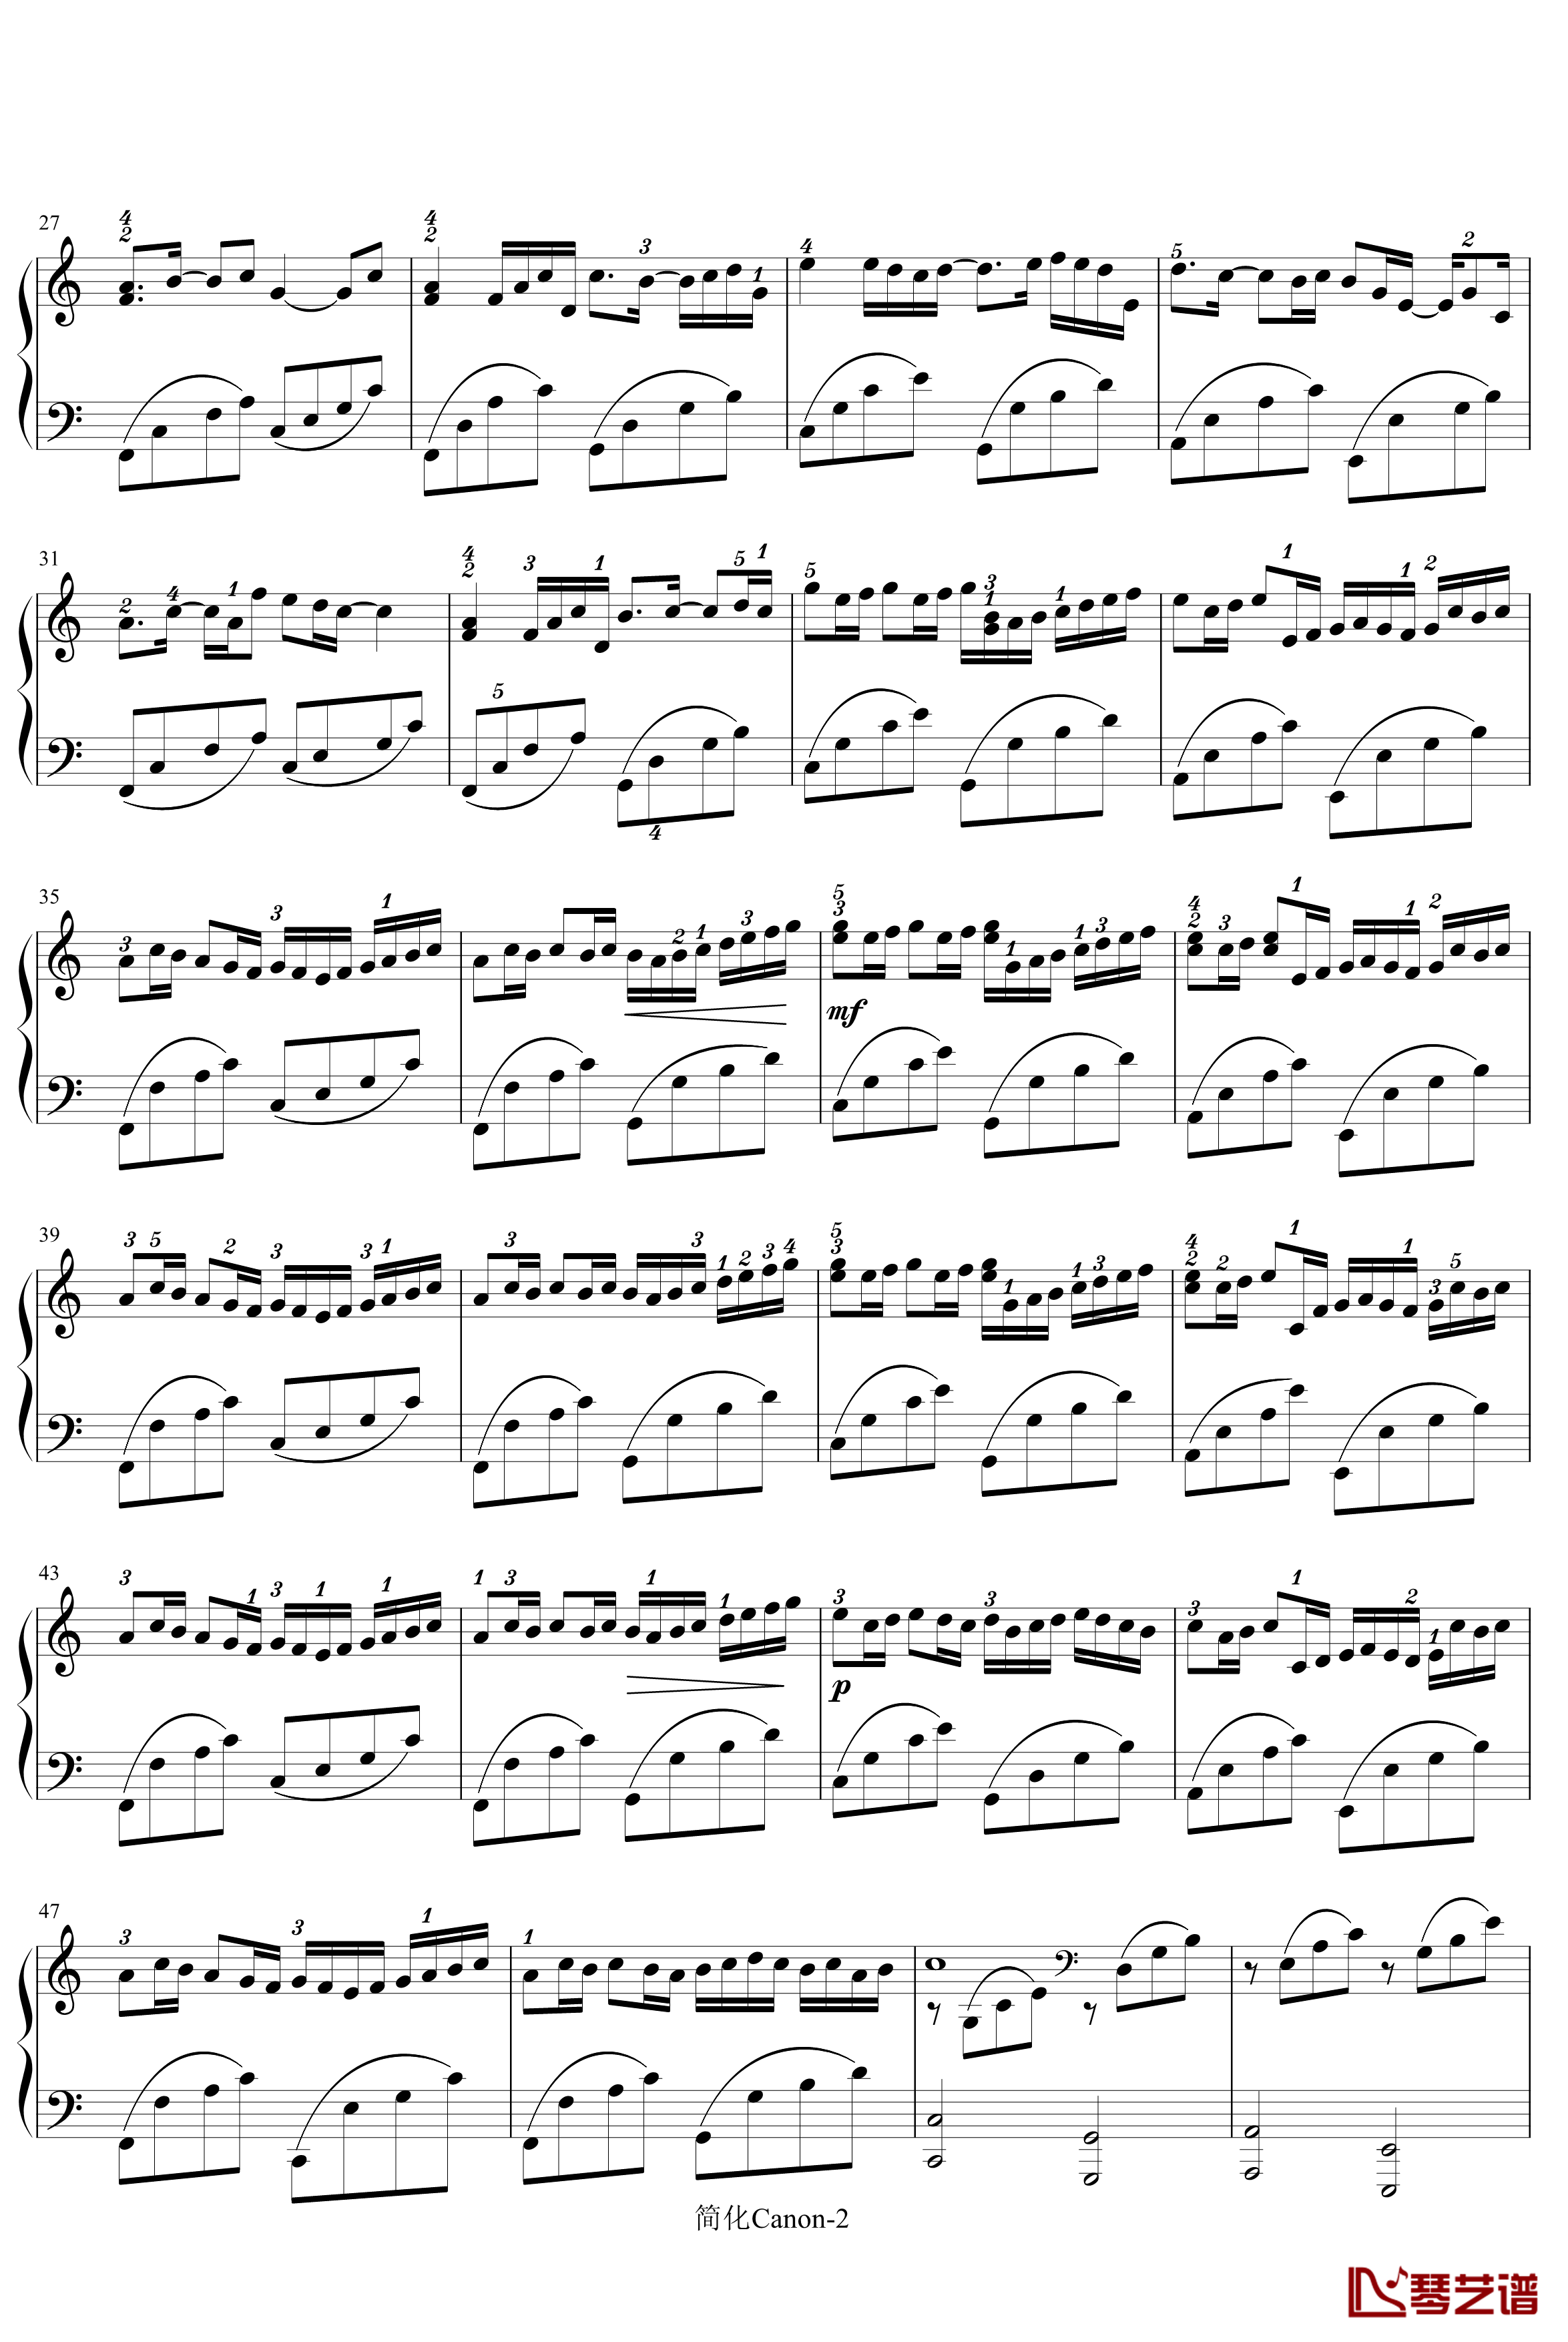 卡农-寒风钢琴谱-简化版-帕赫贝尔-Pachelbel